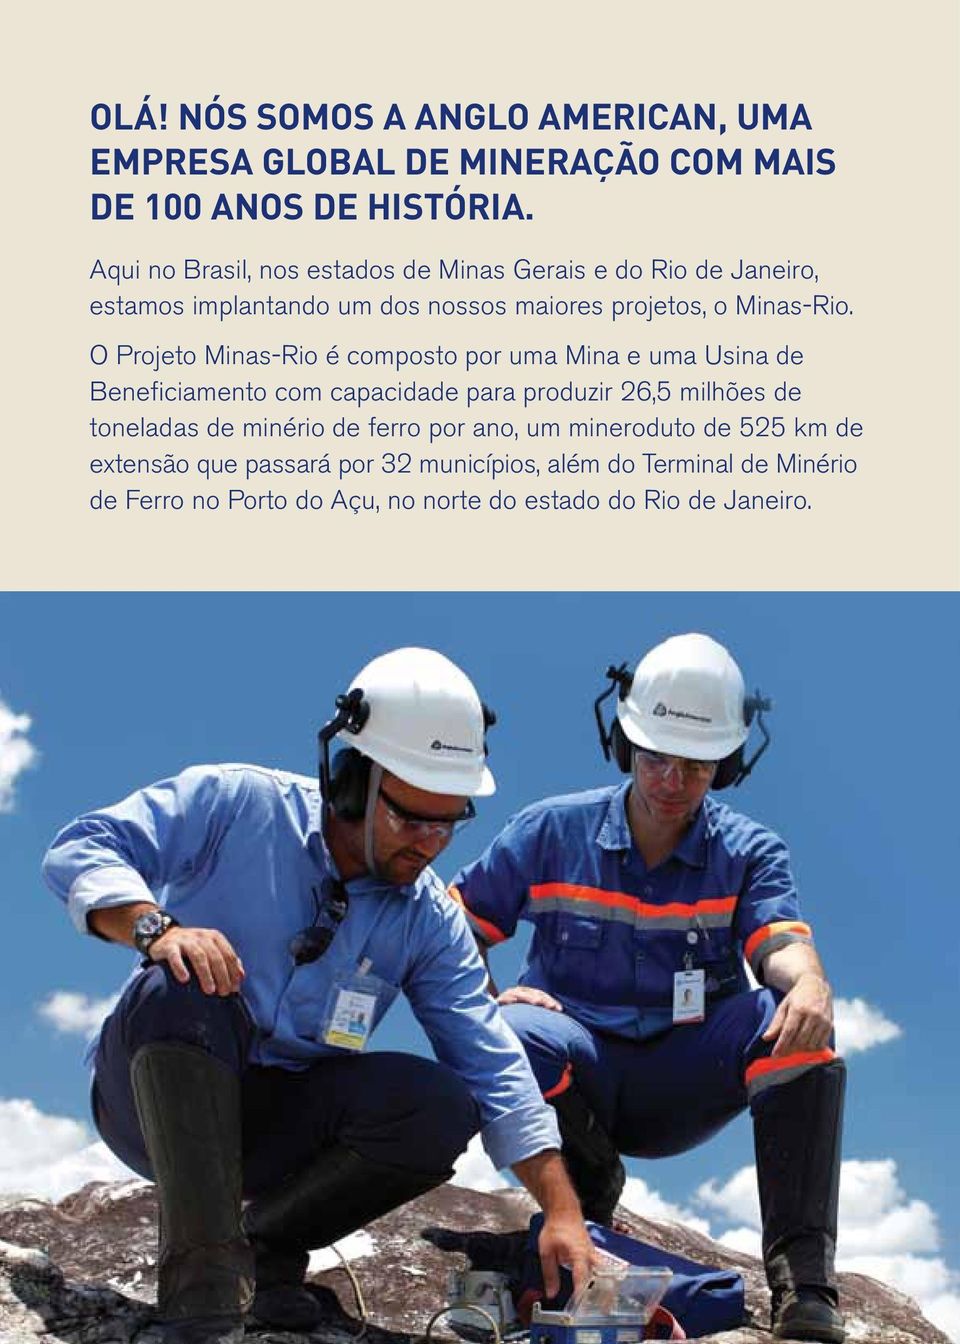 O Projeto Minas-Rio é composto por uma Mina e uma Usina de Beneficiamento com capacidade para produzir 26,5 milhões de toneladas de